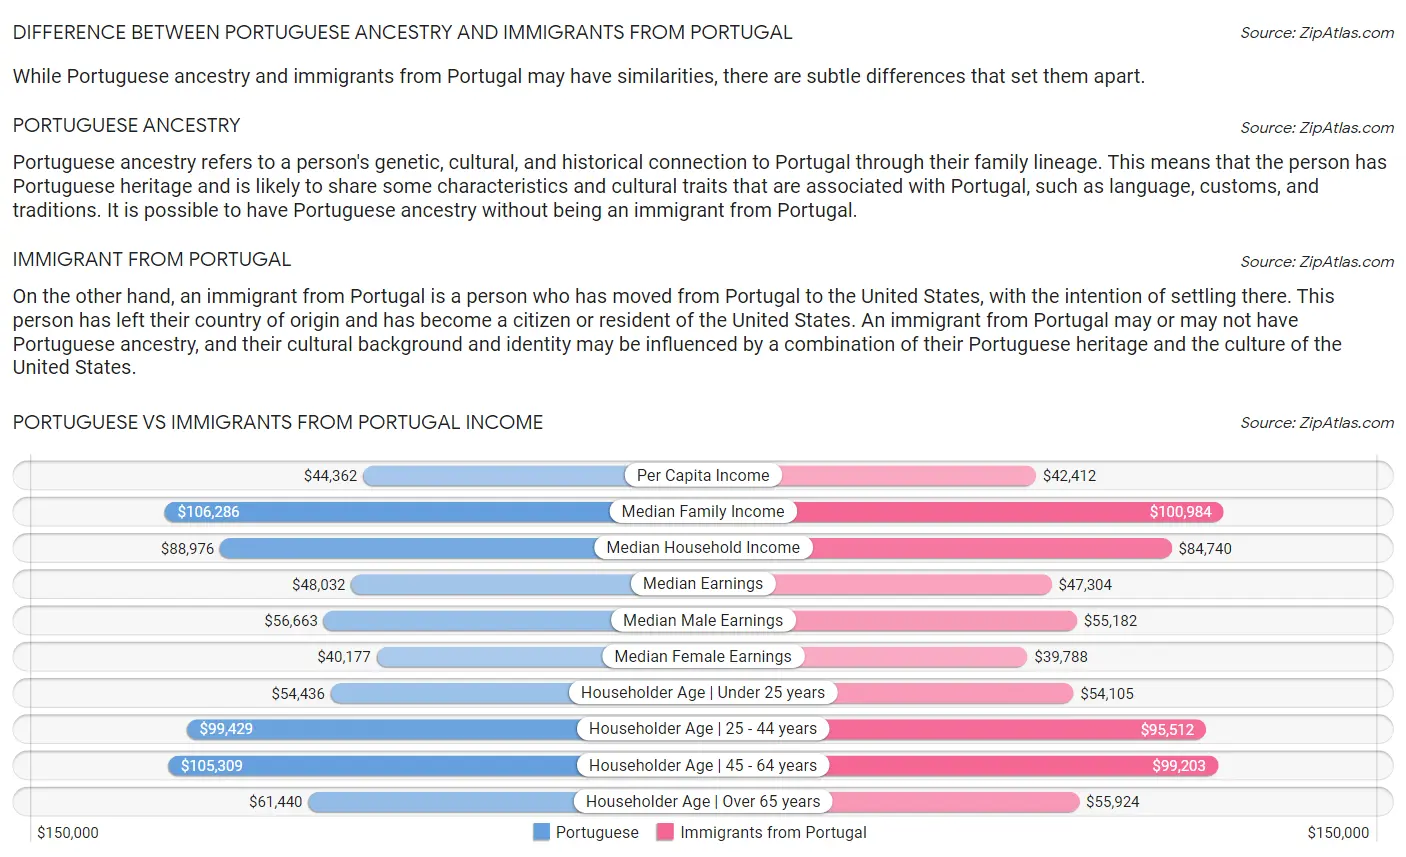 Portuguese vs Immigrants from Portugal Income